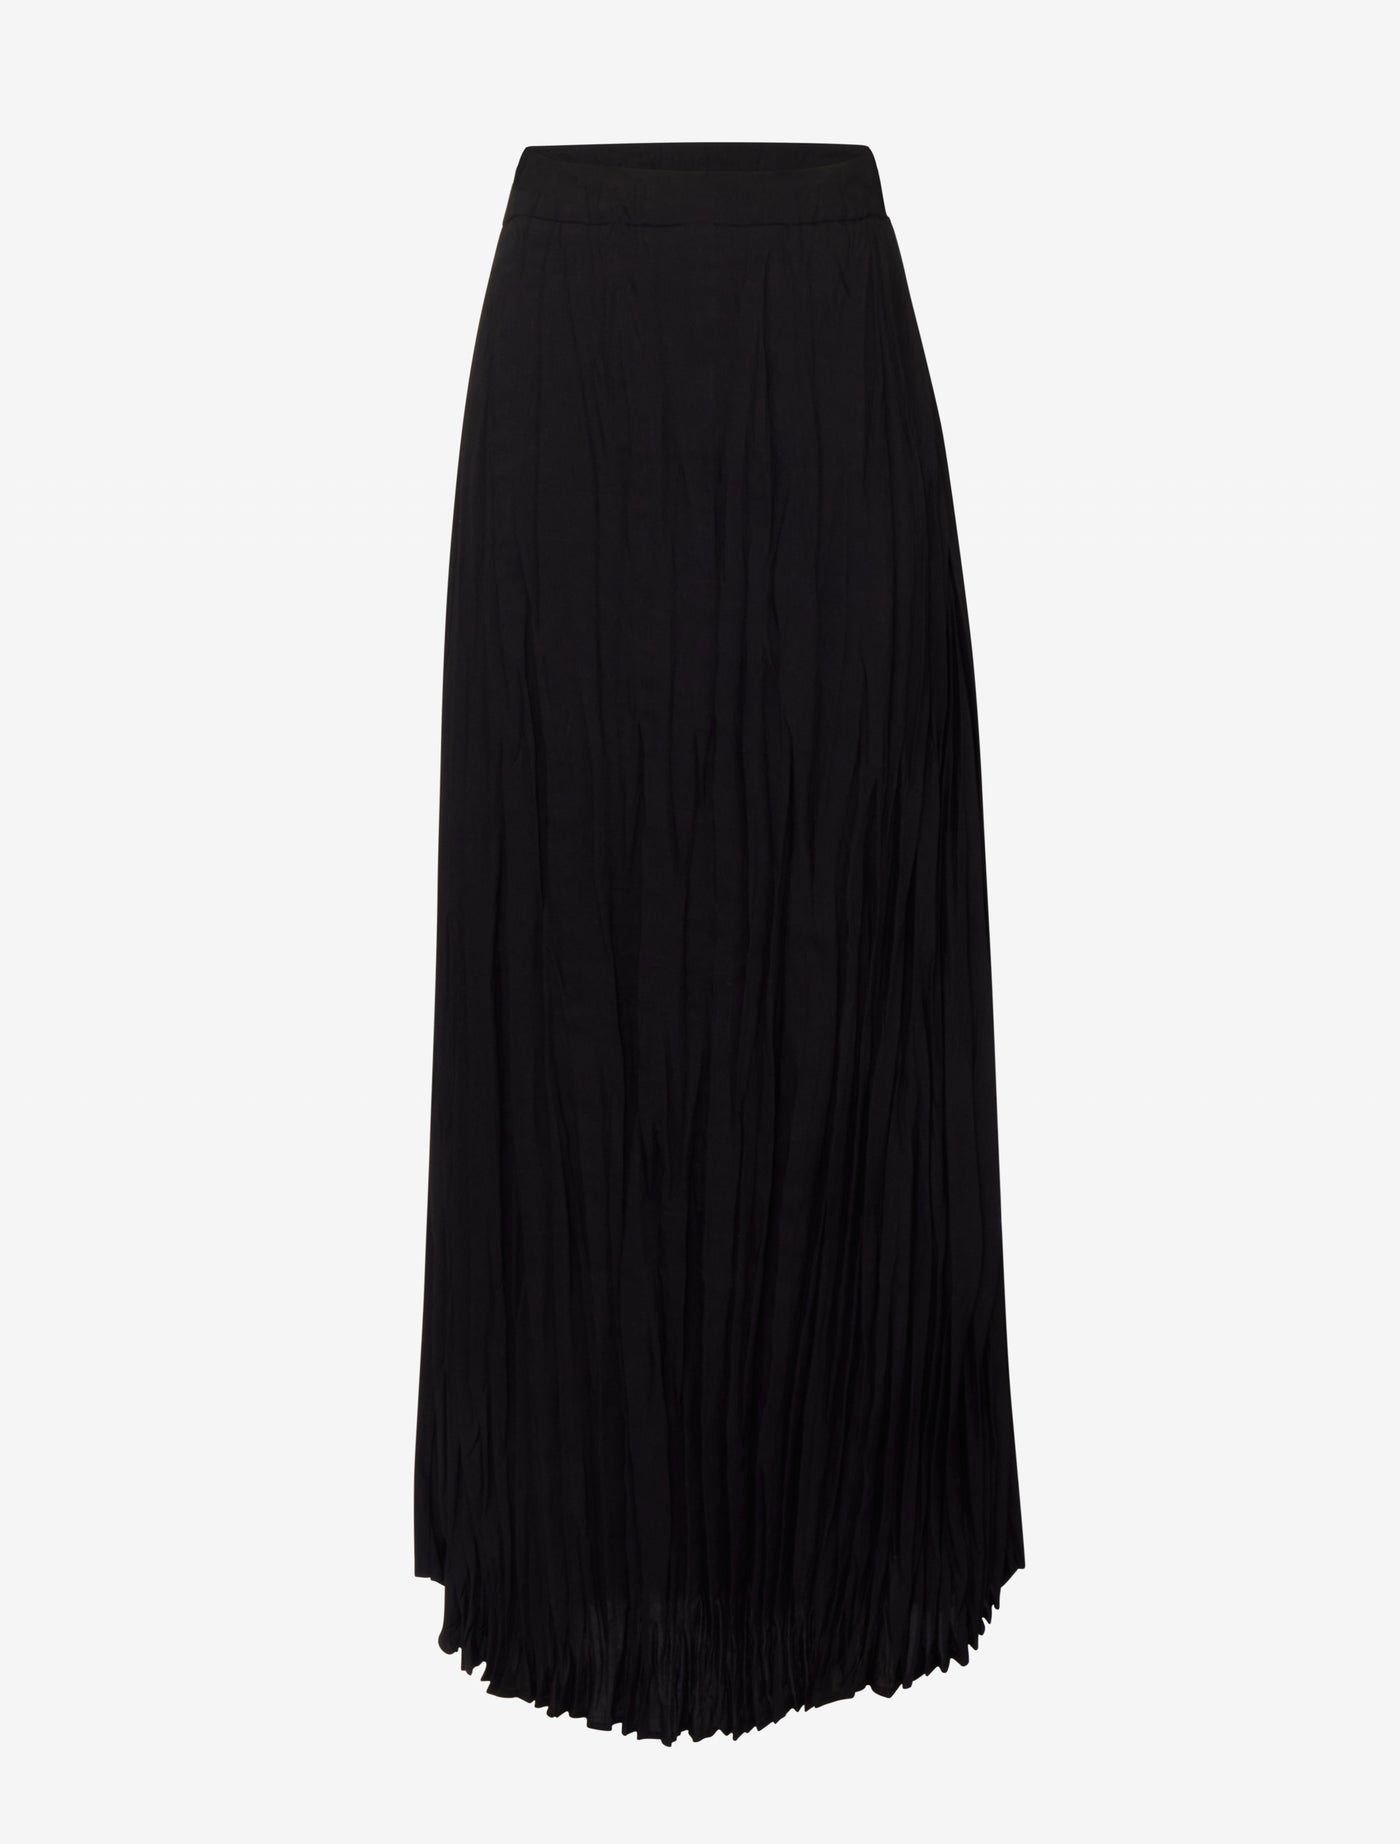 Ranaculus Skirt in Black